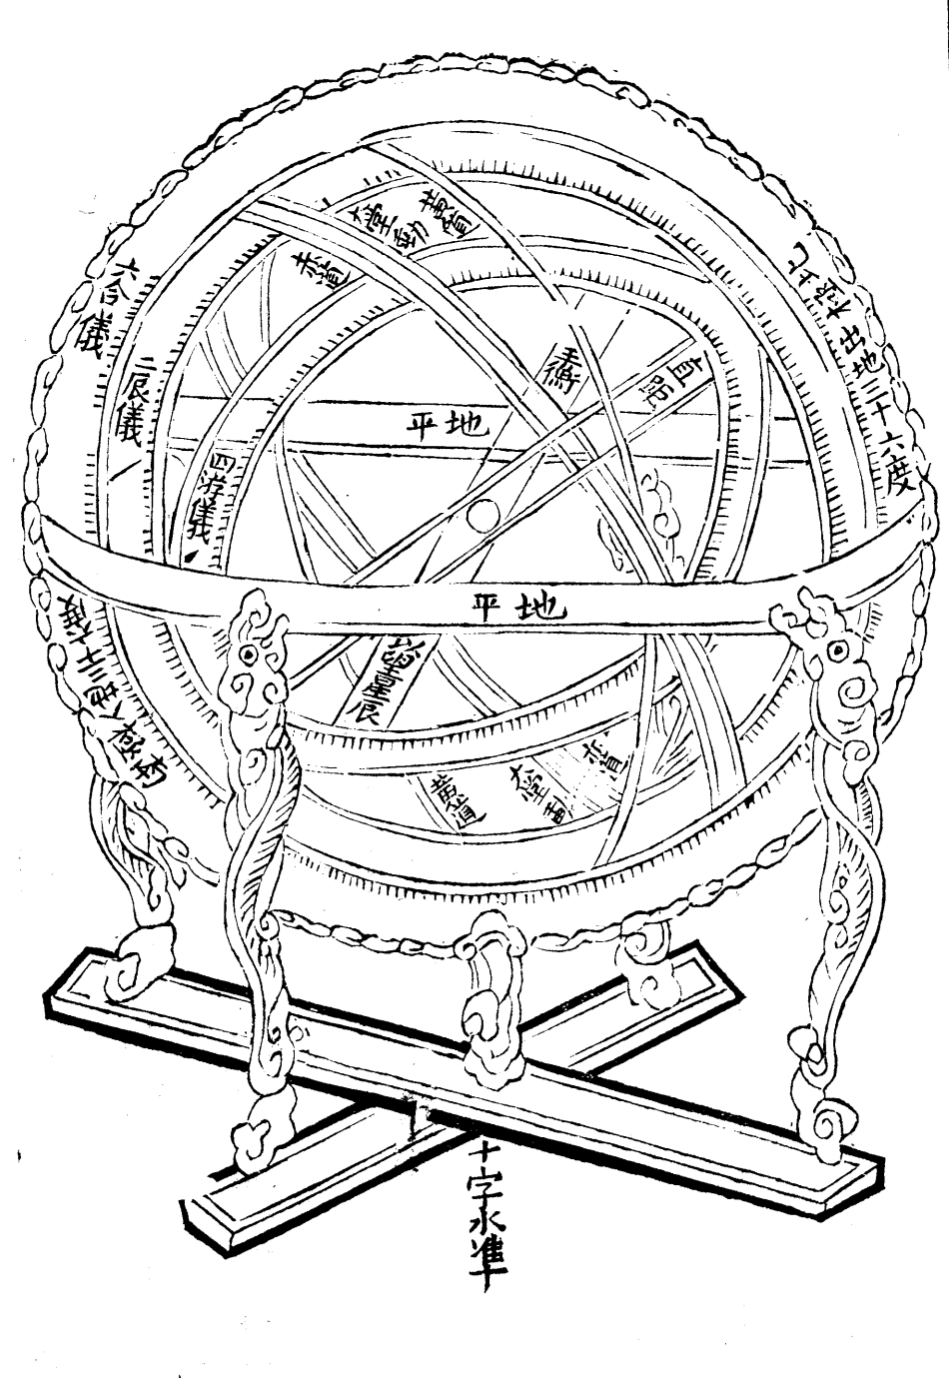 浑天仪数学也不错这些精密仪器的设计必然离不开数学,在汉帝国时期